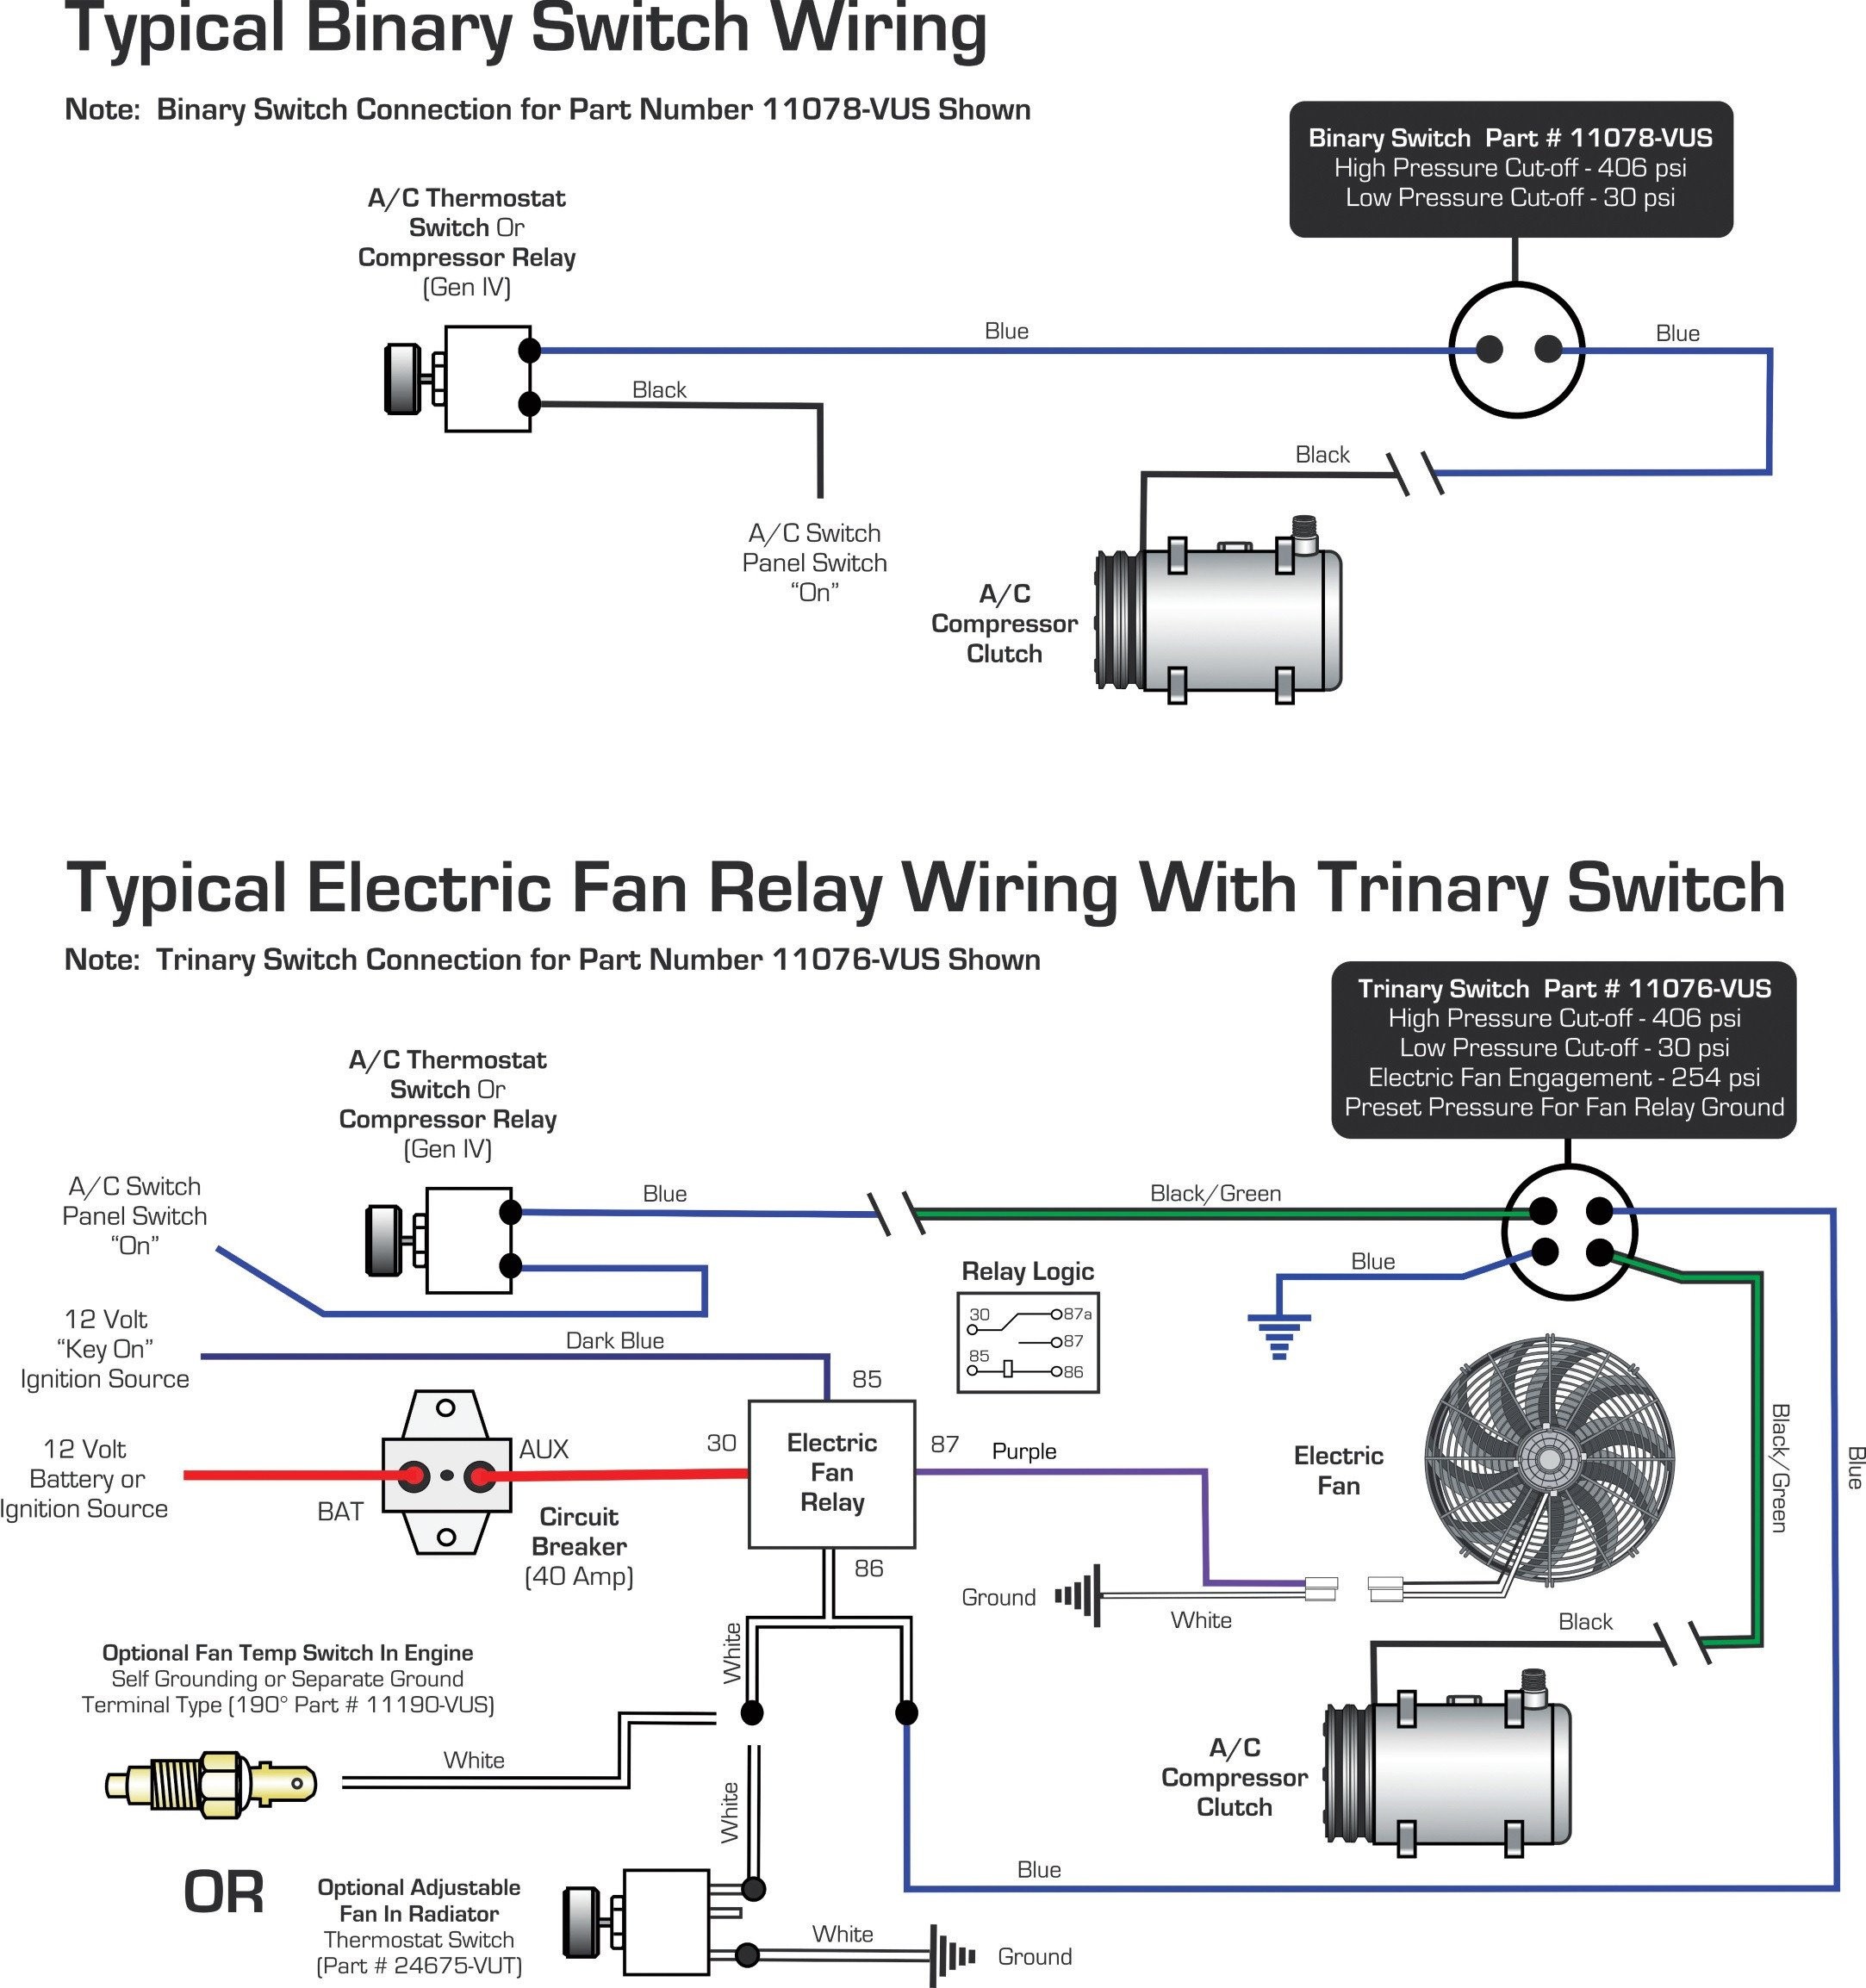 binary switch wiring diagram automotive wiring diagram u2022 rh nfluencer co a c binary switch wiring diagram Trinary Switch Wiring Diagram